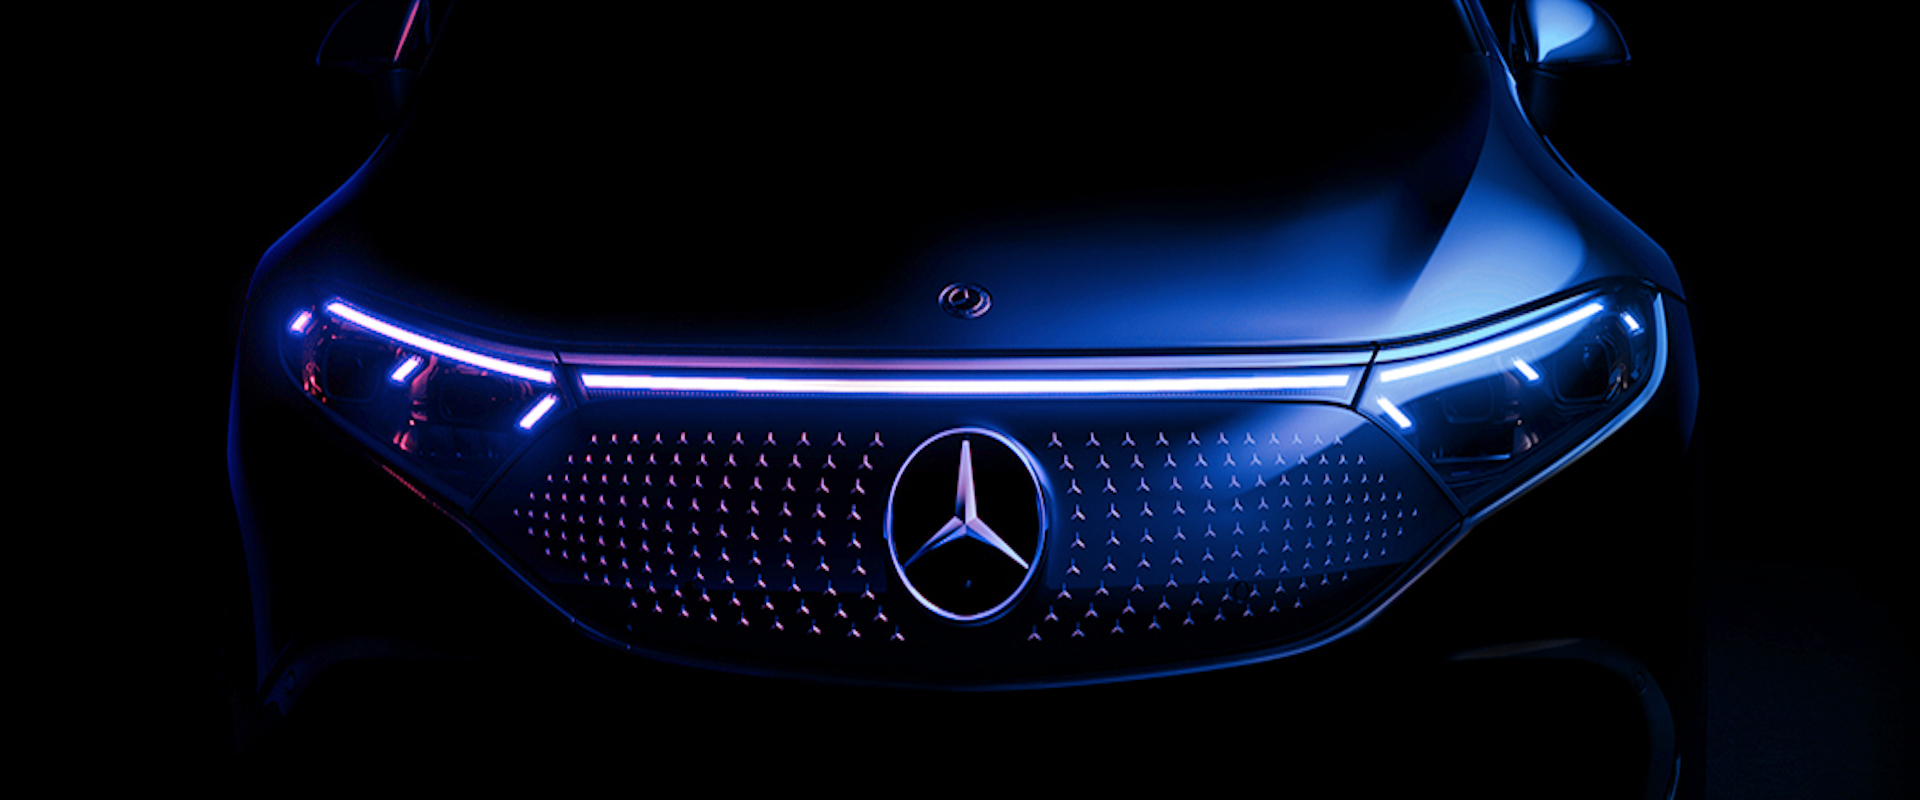 Mercedes-Benz of Alexandria | New & Pre-Owned Car Dealer in VA